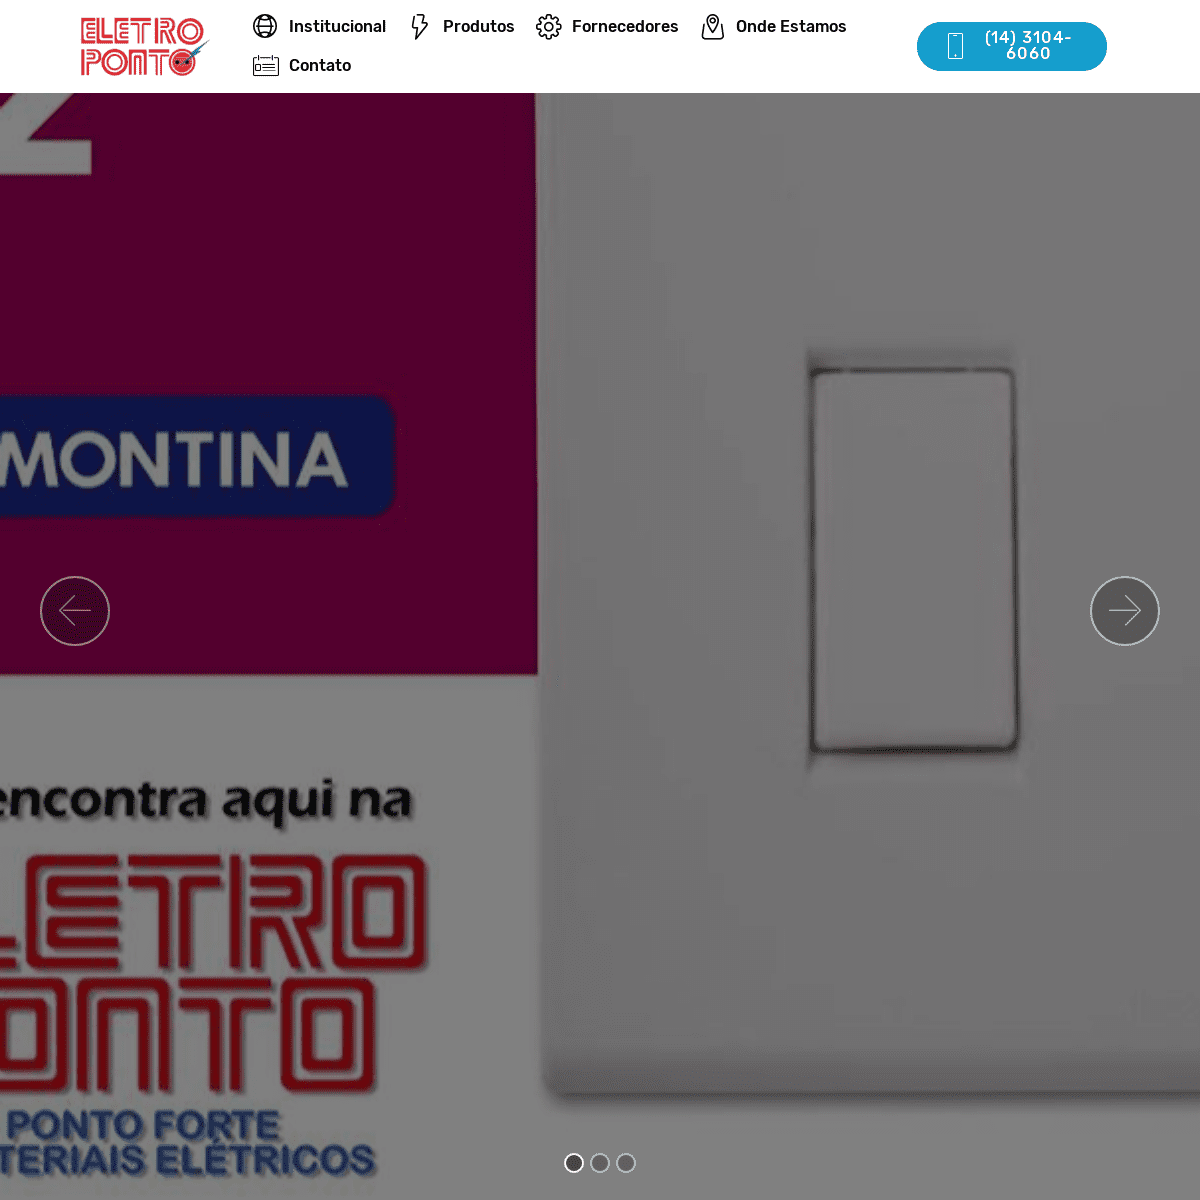 A complete backup of eletroponto.com.br